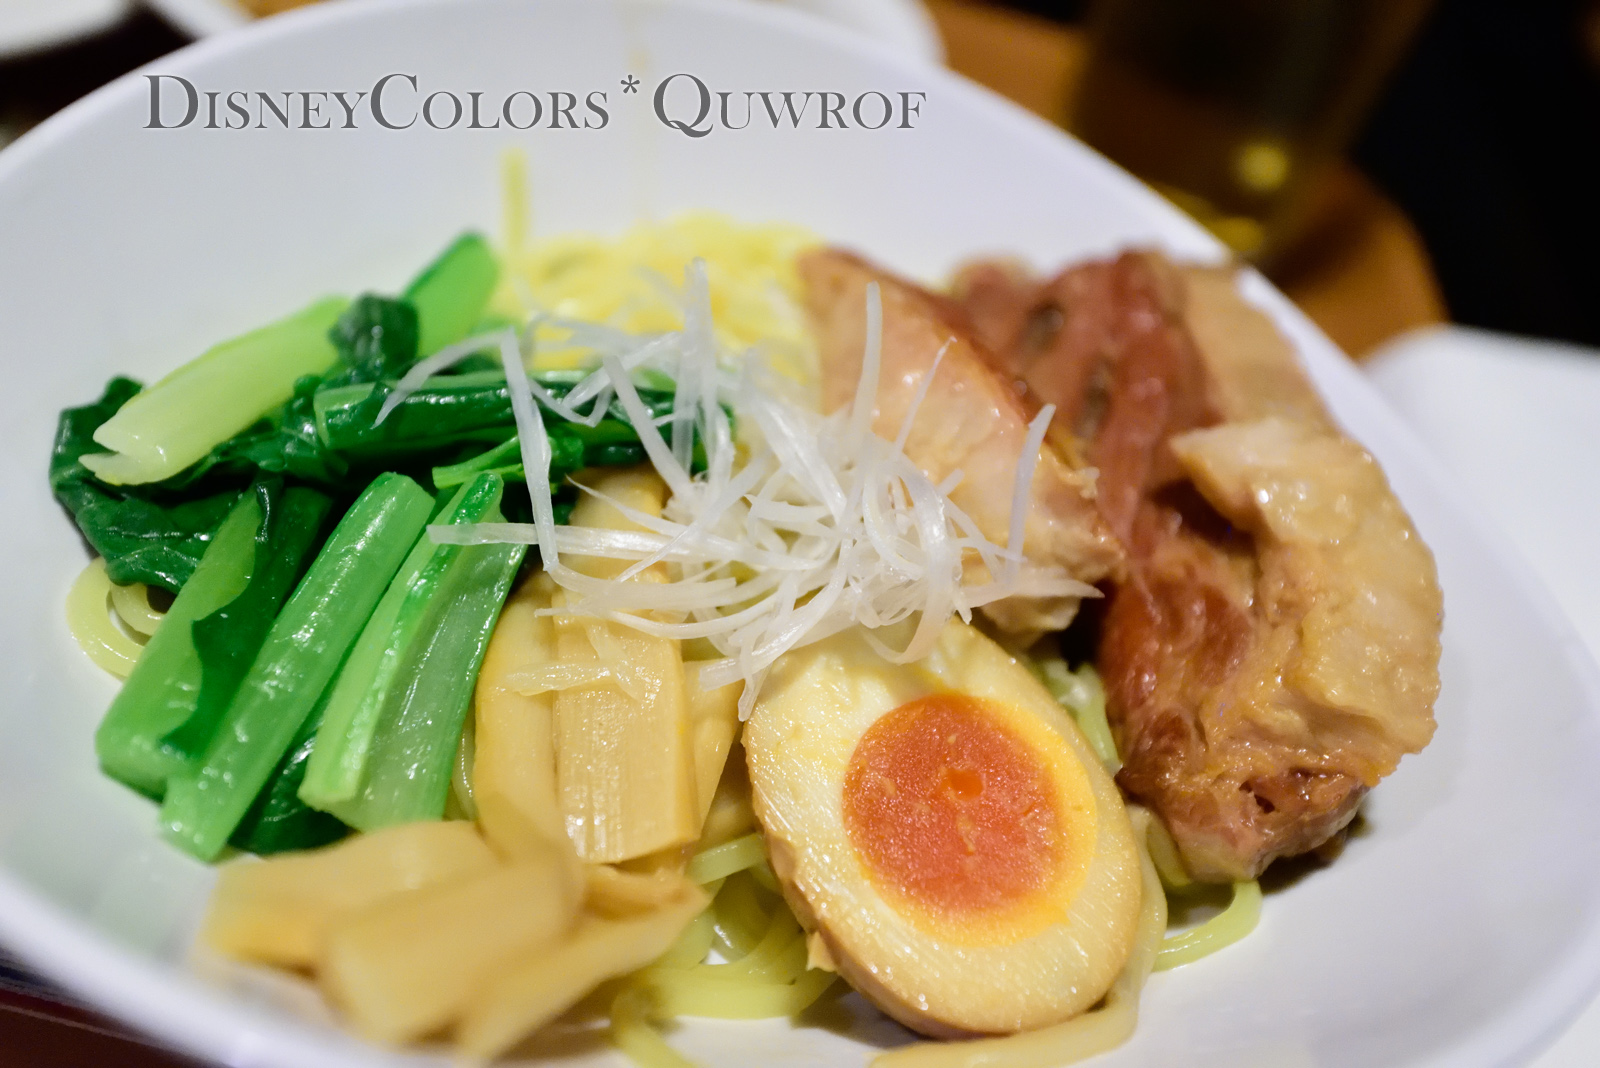 ポークリブが美味しい限定つけ麺が登場 ヴォルケイニア レストラン01 Disney Colors Blog